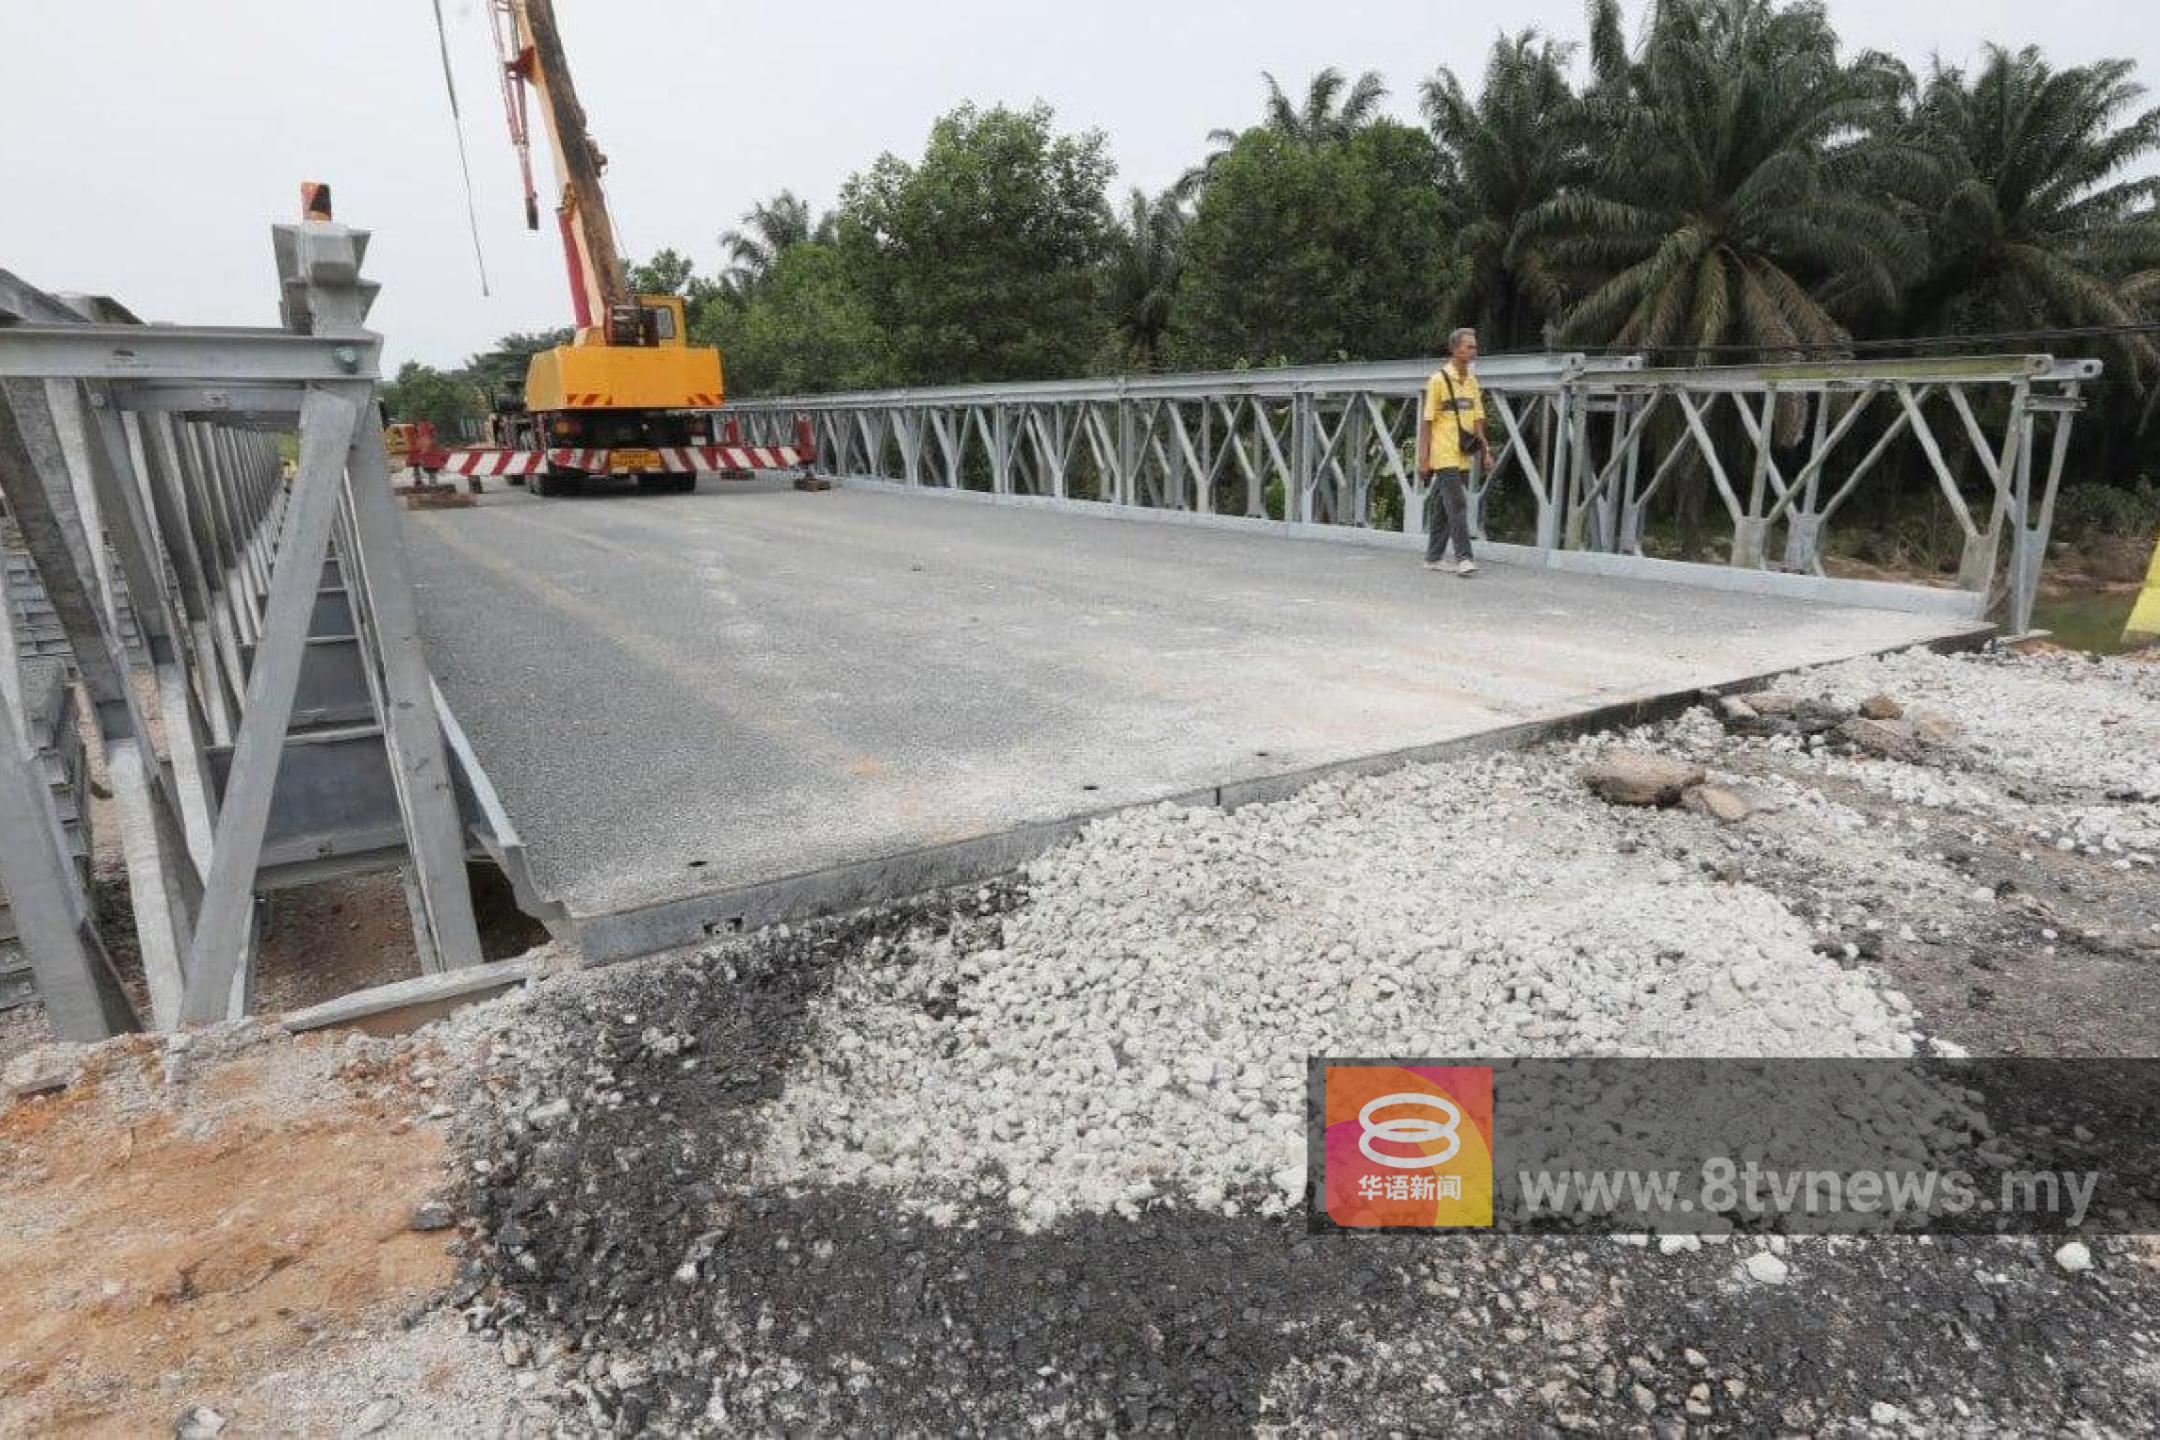 关丹往昔加末桥损毁 工程局封路修复一周